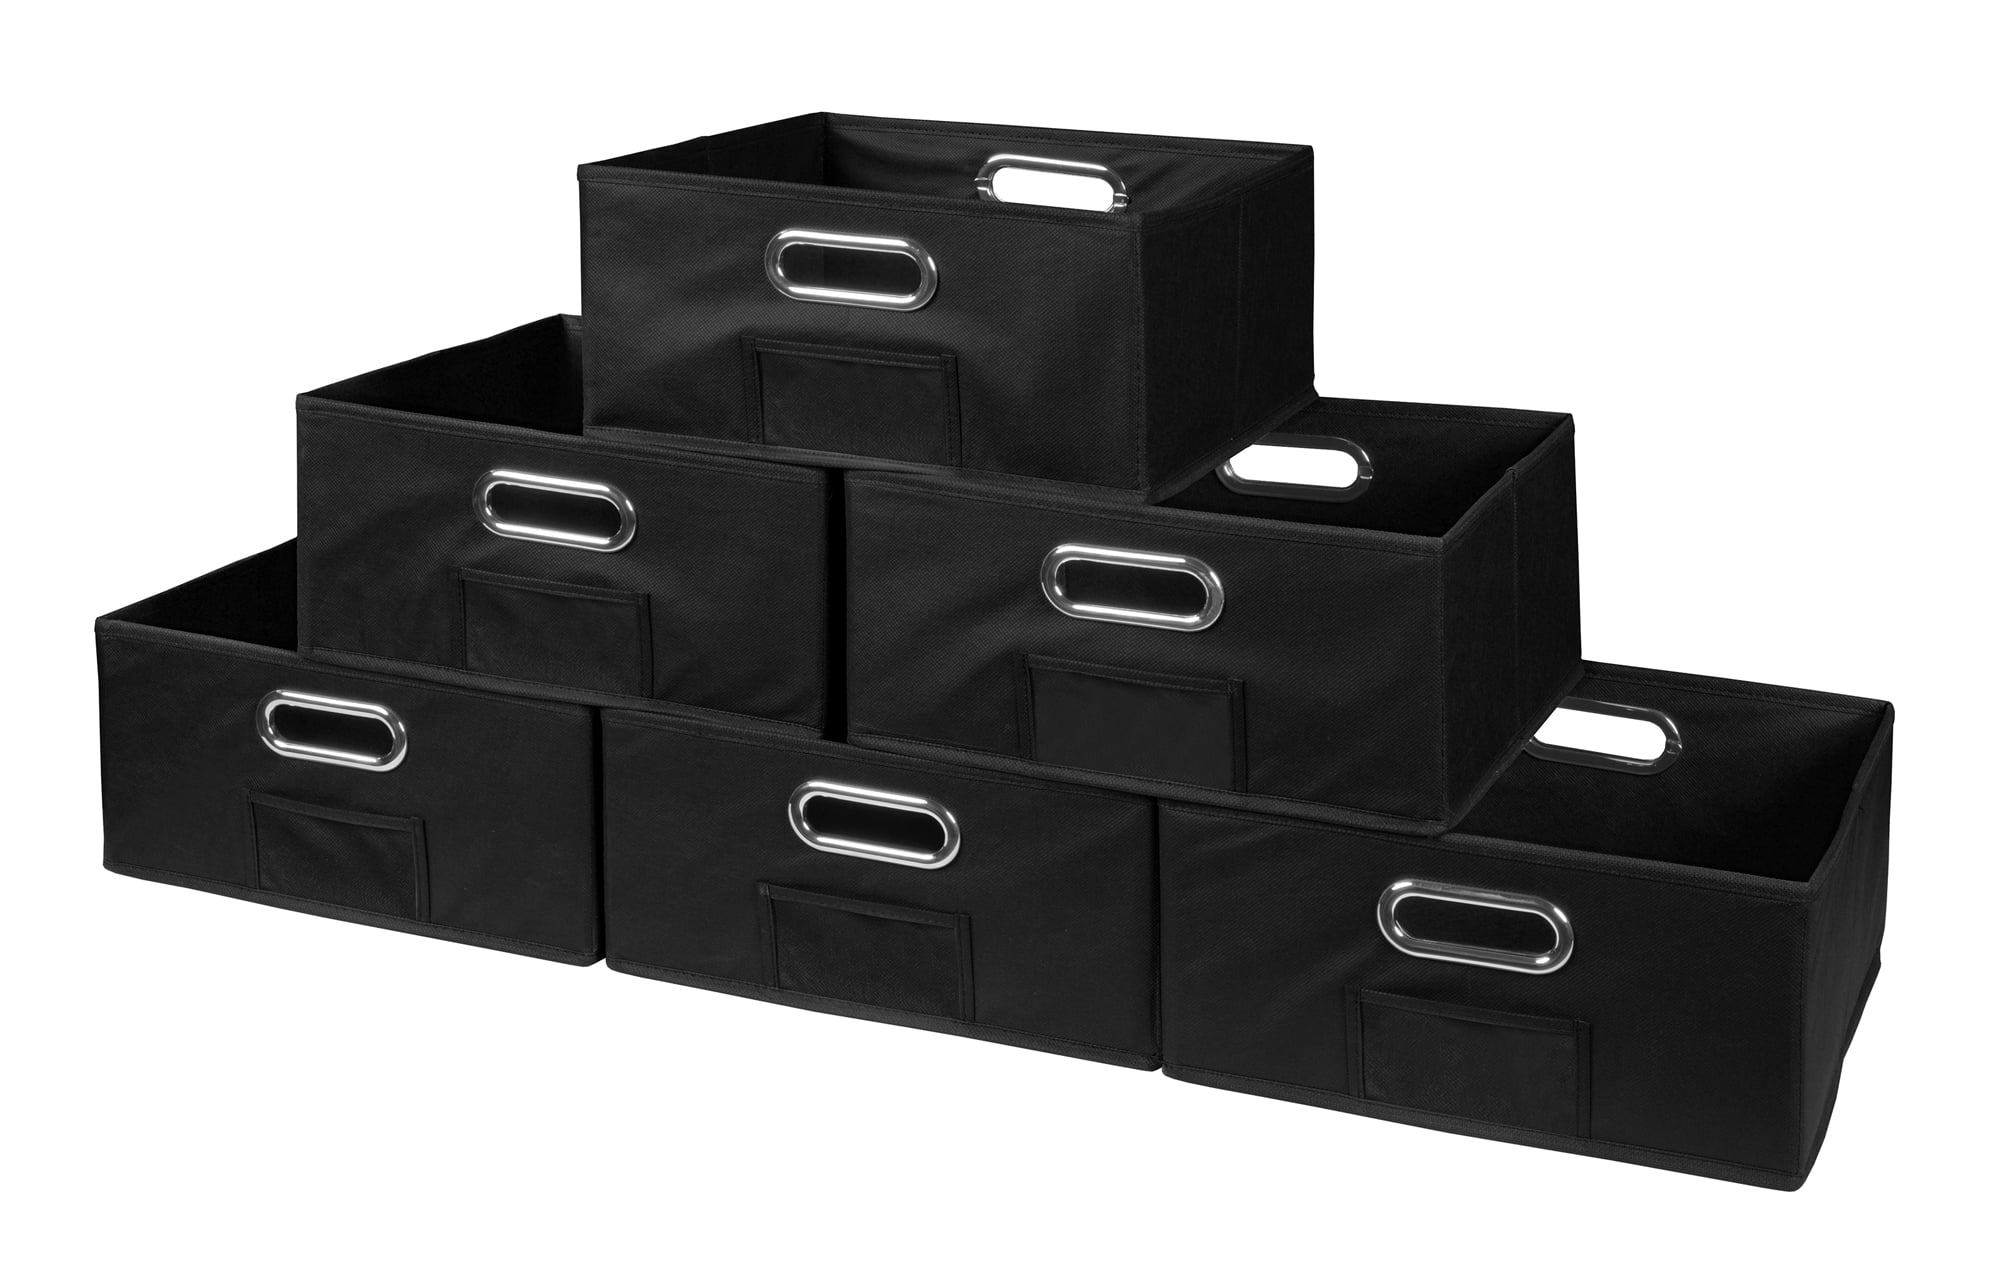 StorageWorks Storage bins set of 6 